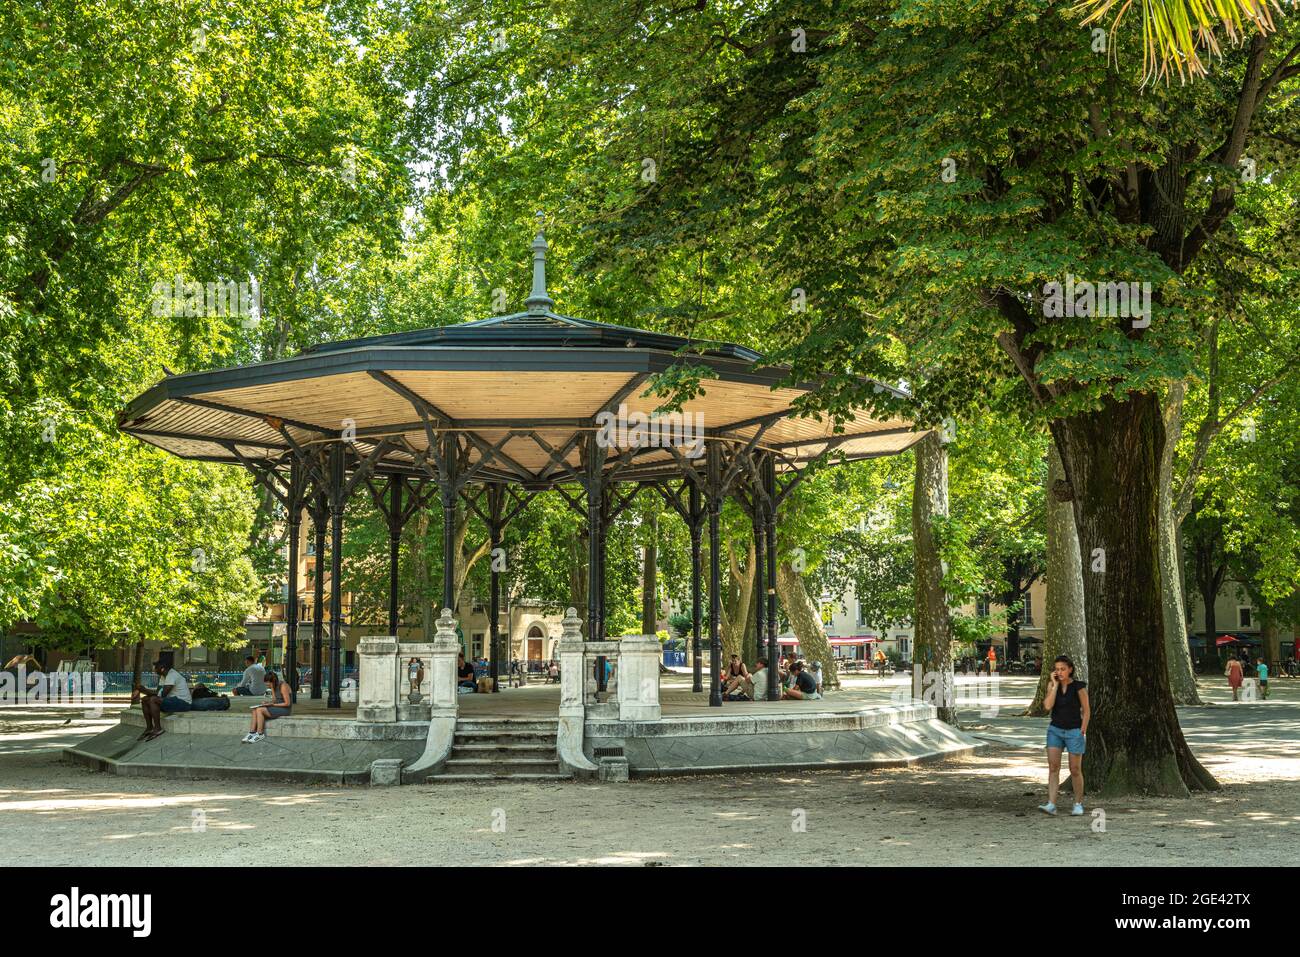 Pavillon im Park, Treffpunkt für Jugendliche und Touristen in Grenoble. Grenoble, Departement Isère, Region Auvergne-Rhône-Alpes, Frankreich, Europa Stockfoto